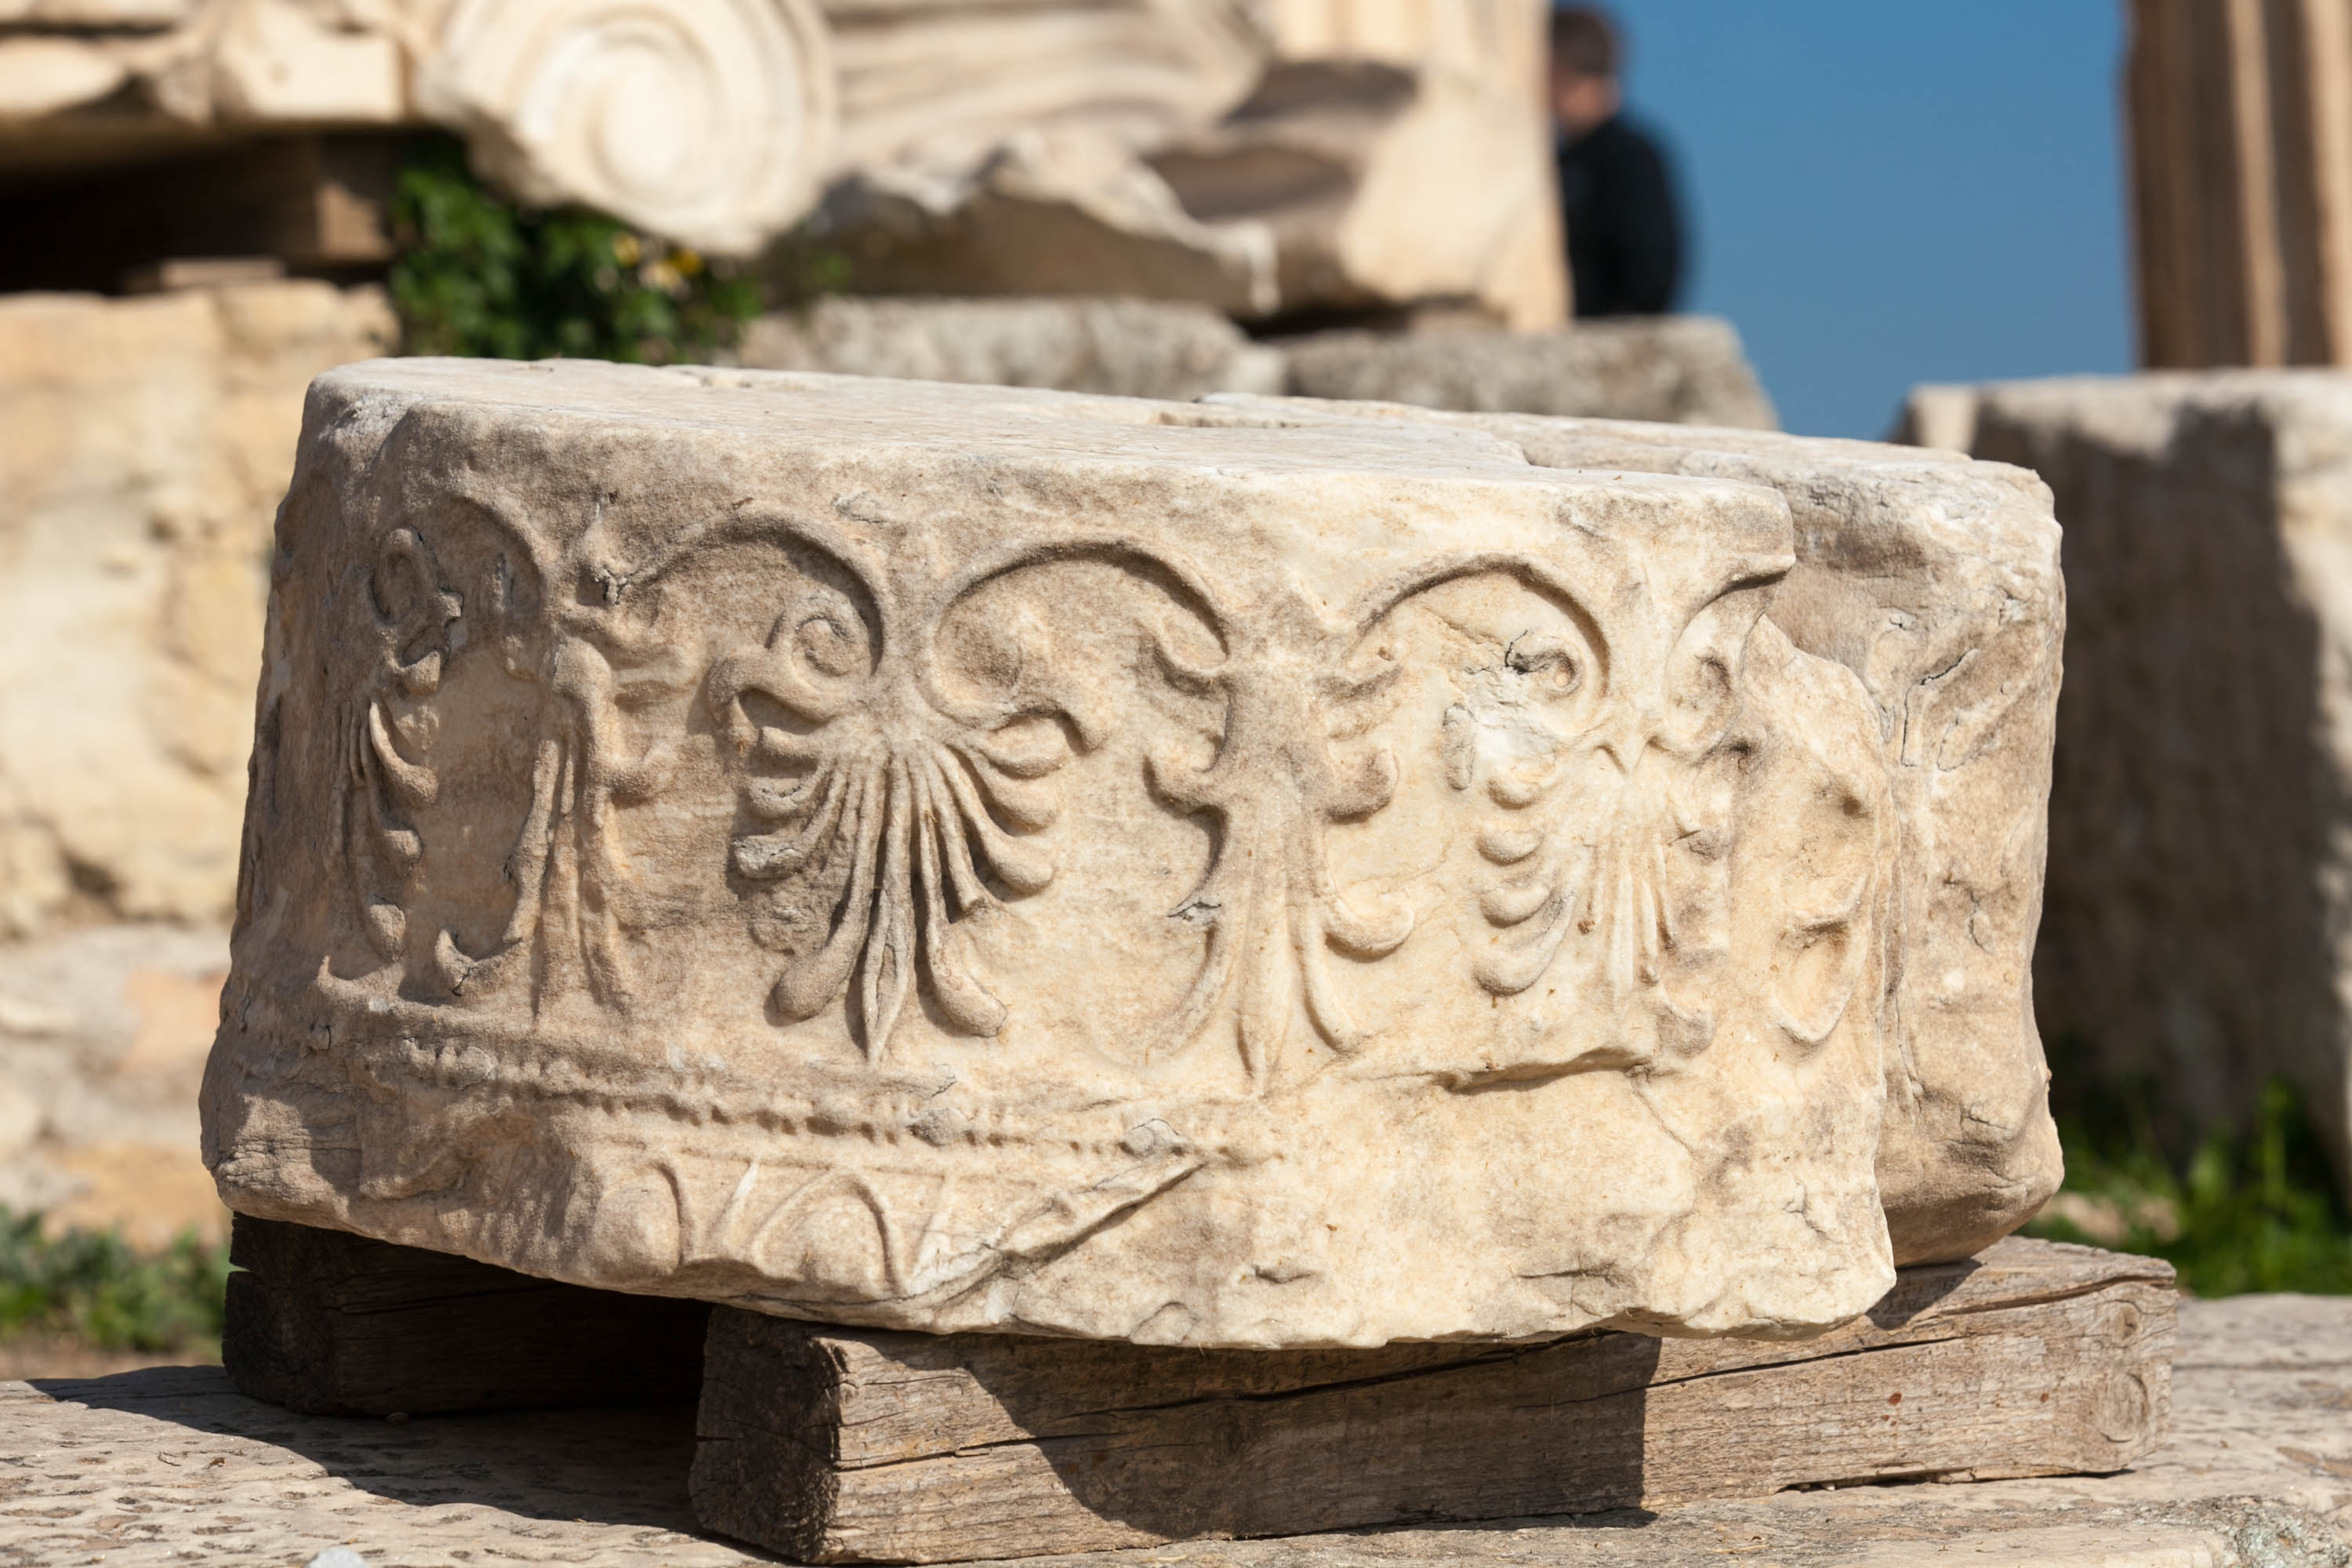 Doric temple remains at Acropolis